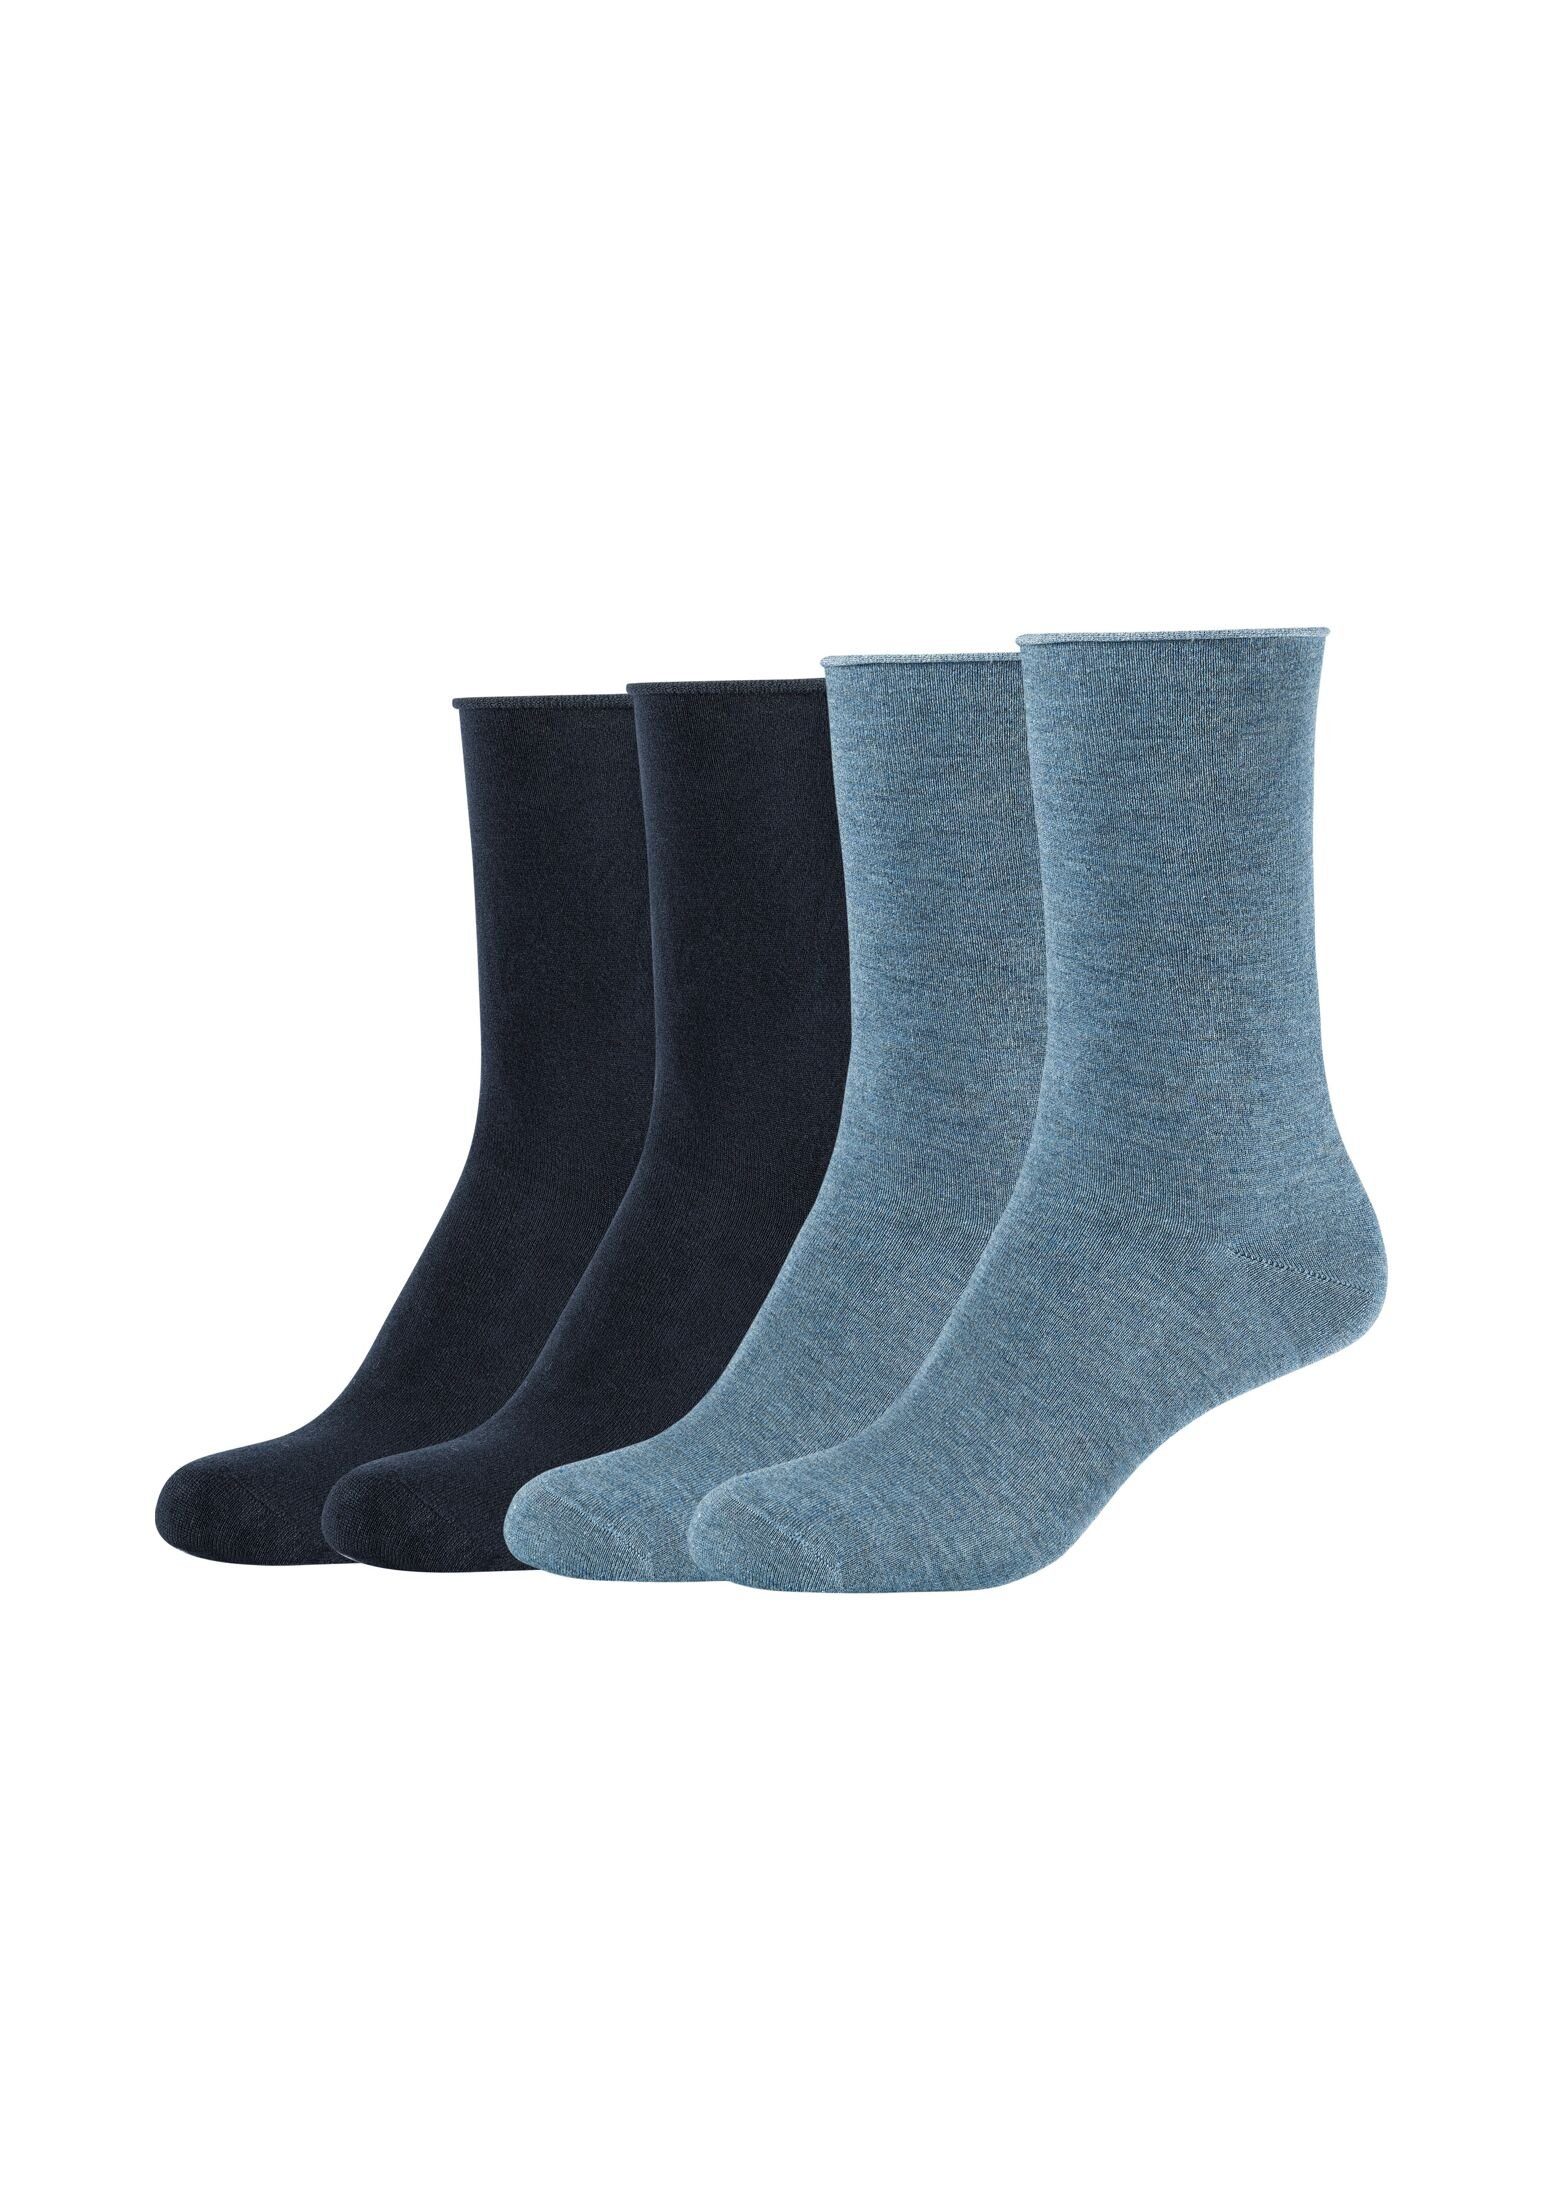 melange+navy stone Pack 4er Socken Socken s.Oliver